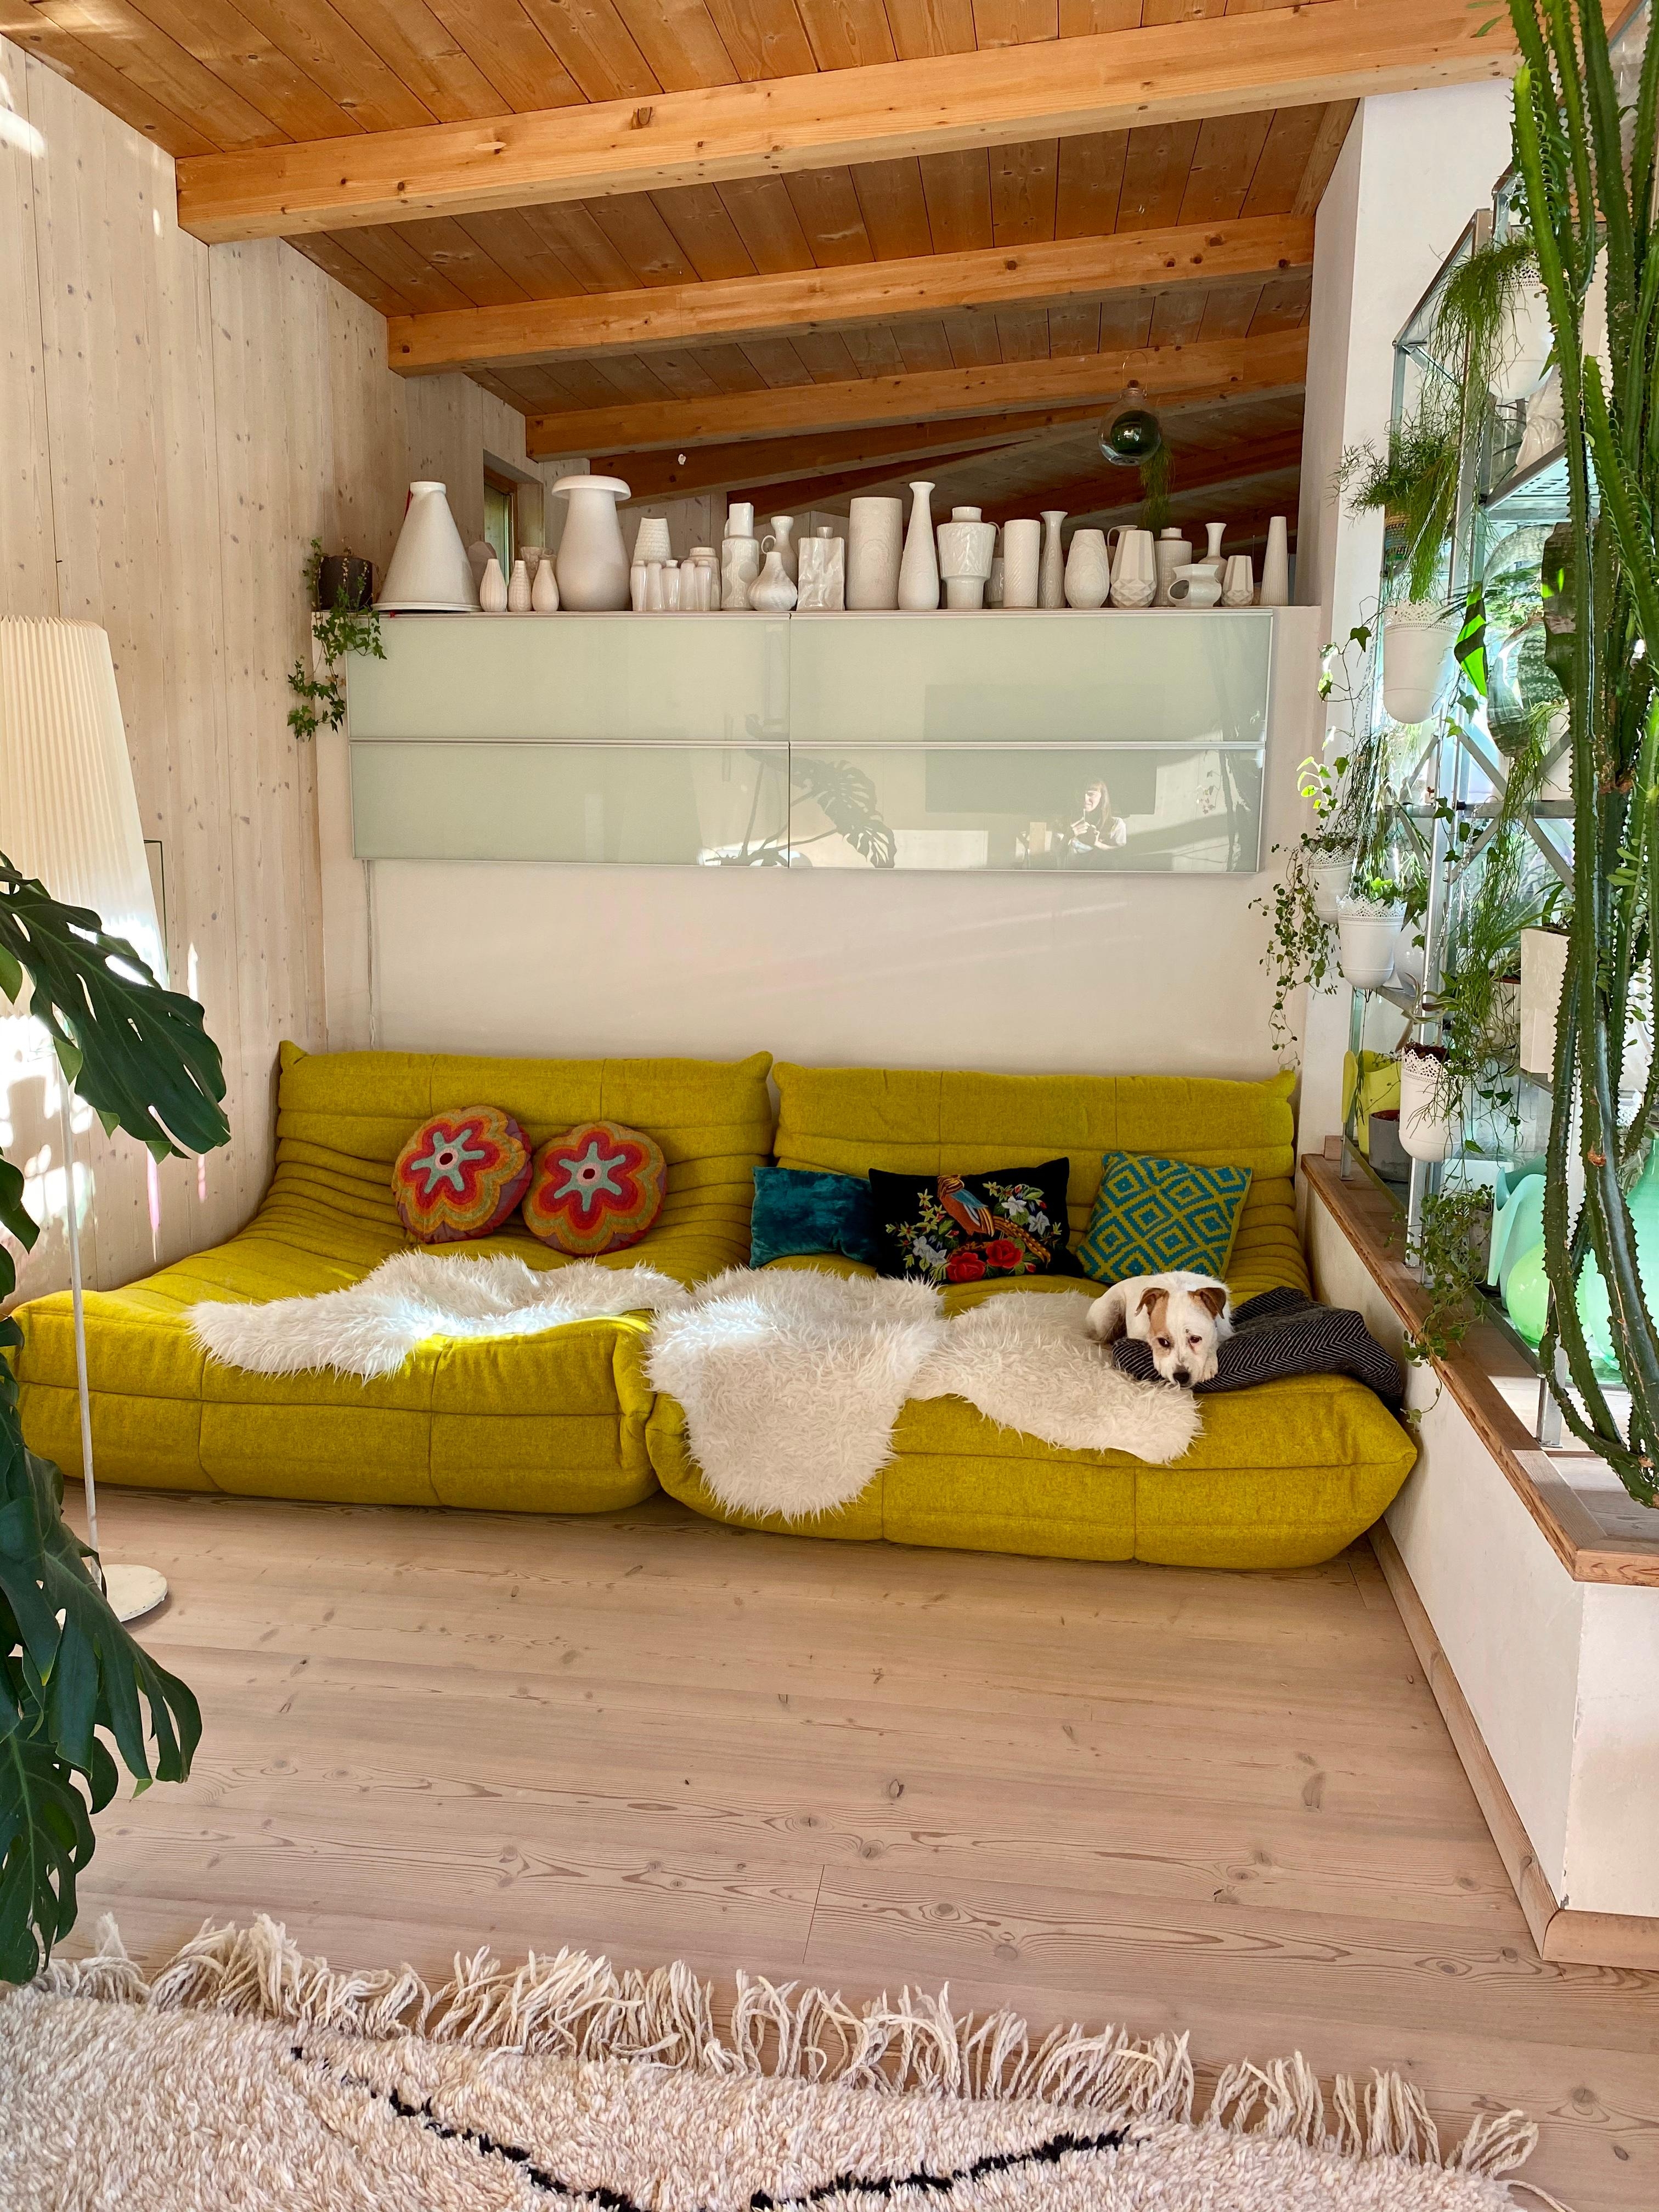 wir lieben 💚 unsere grüne kuschelecke mit den #togo sofas im #wohnzimmer #loftstyle #planzen #pflanzenliebe 